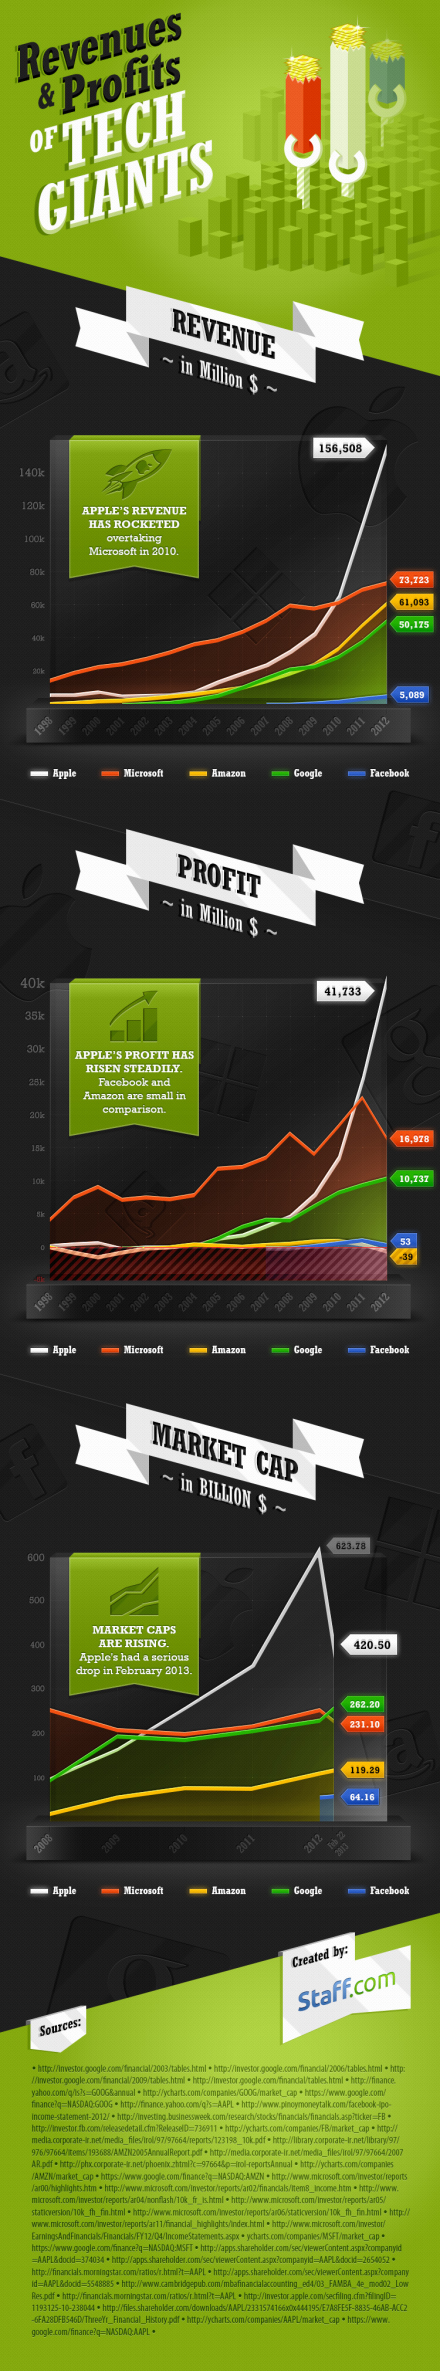 infograph_revenue-profit-tech-giants